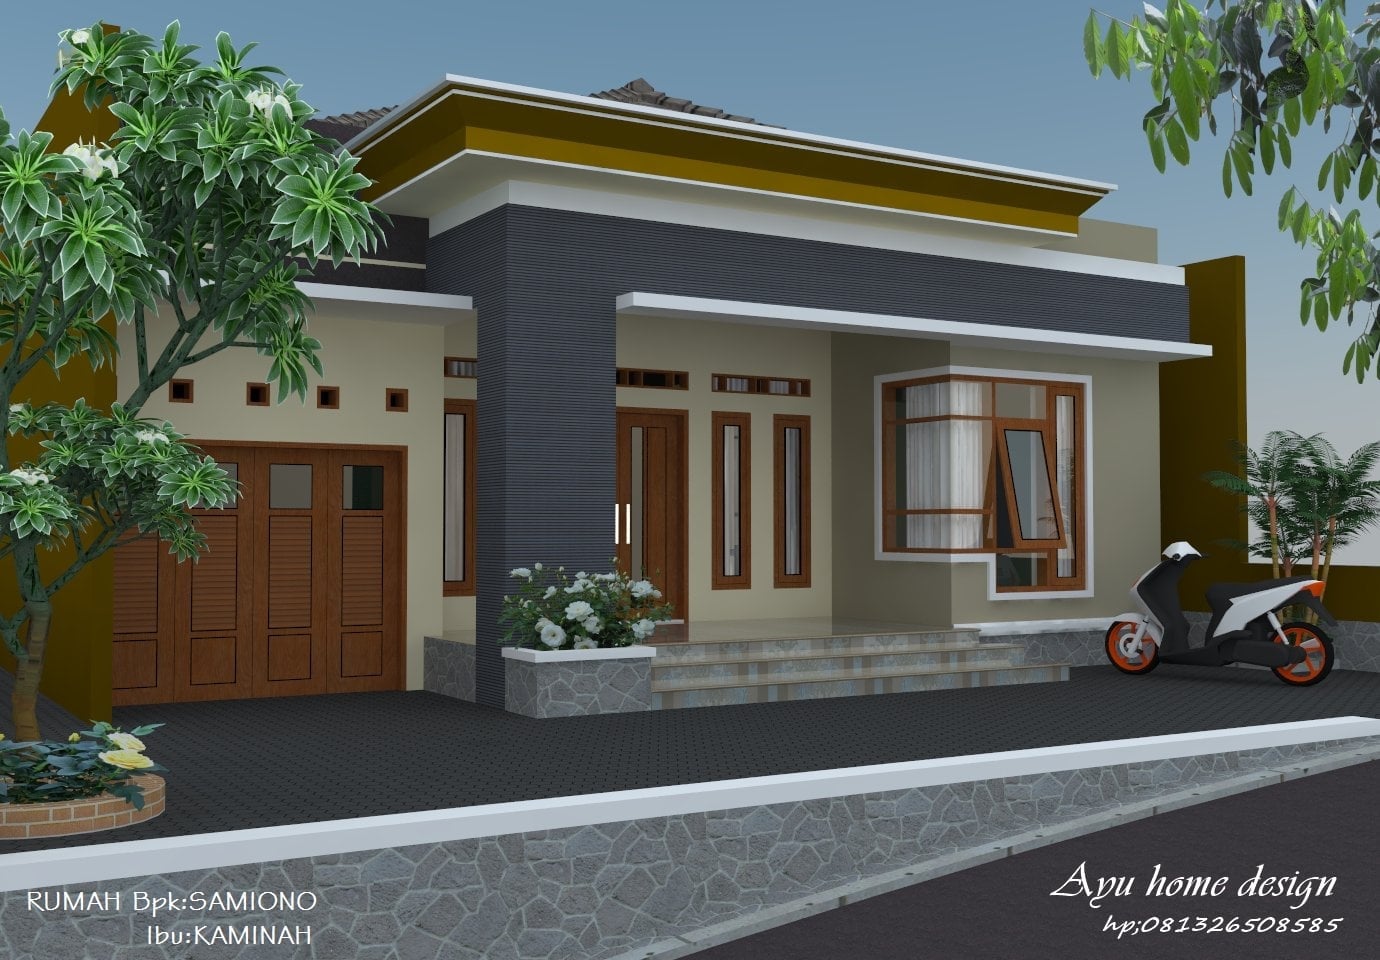 Besar Desain Rumah Minimalis Sederhana Di Desa 70 Renovasi Ide Merombak Rumah oleh Desain Rumah Minimalis Sederhana Di Desa